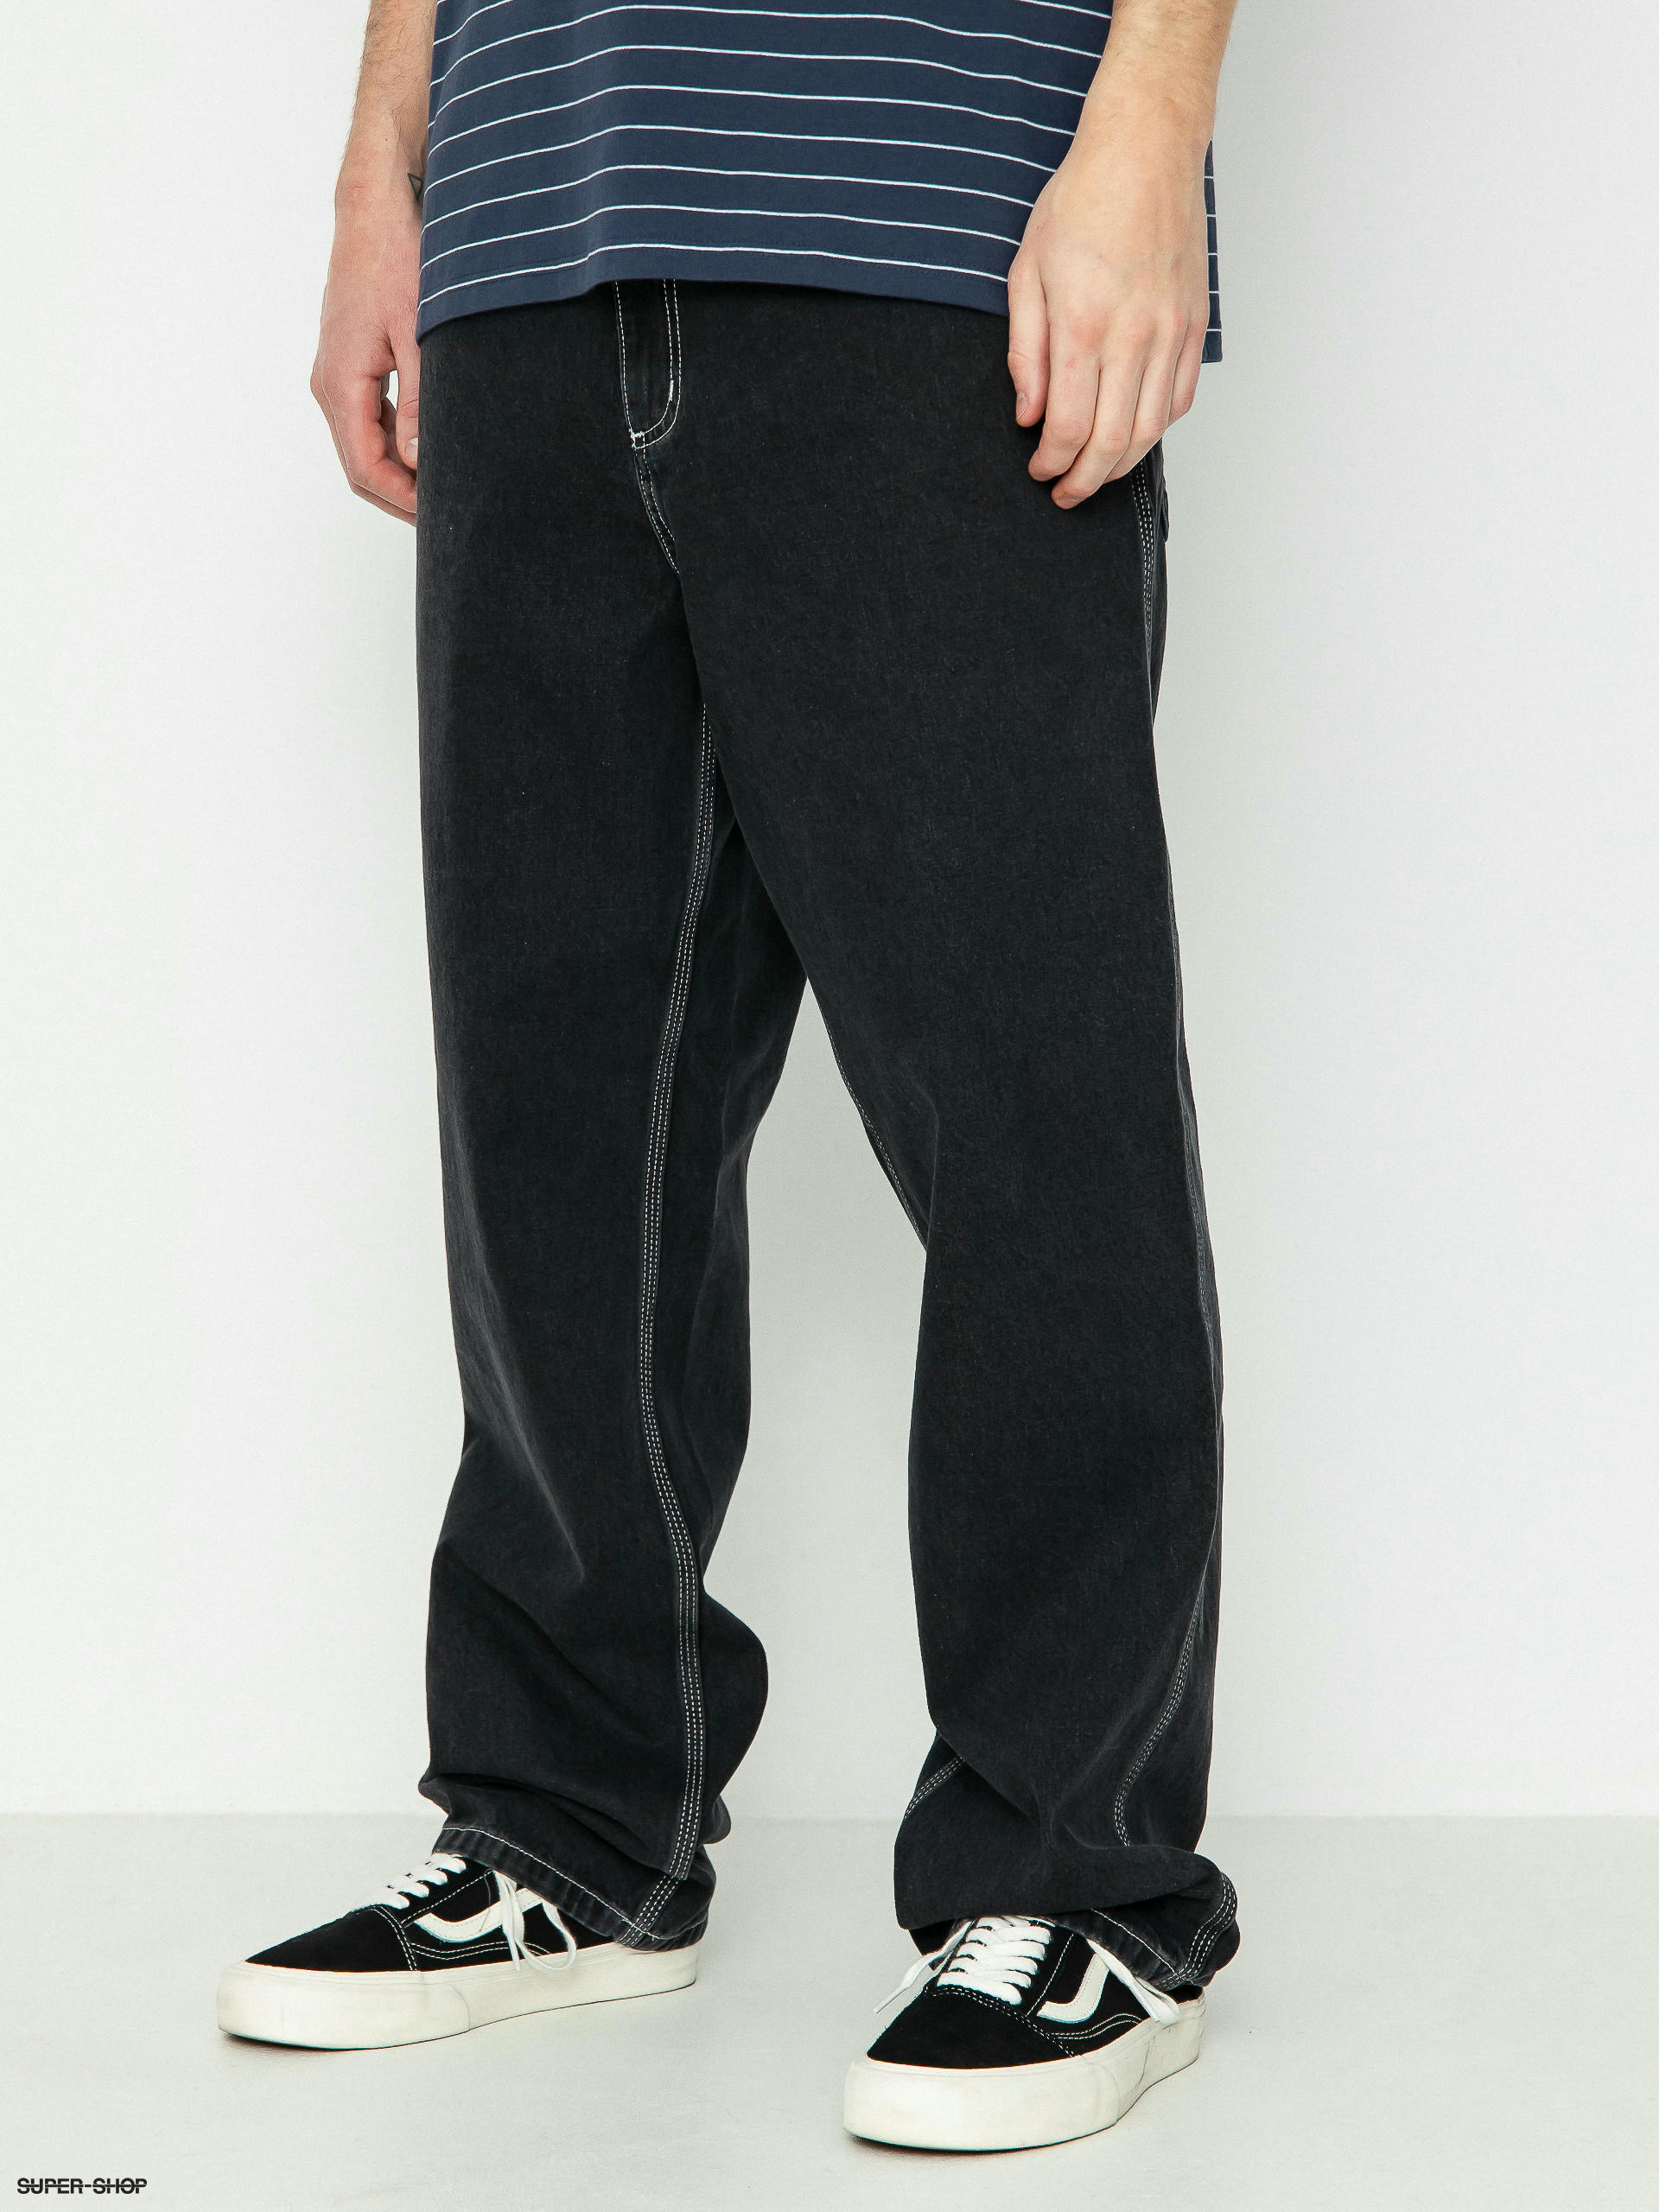 Carhartt WIP- Master Pants, Simple Pants, Double Knees